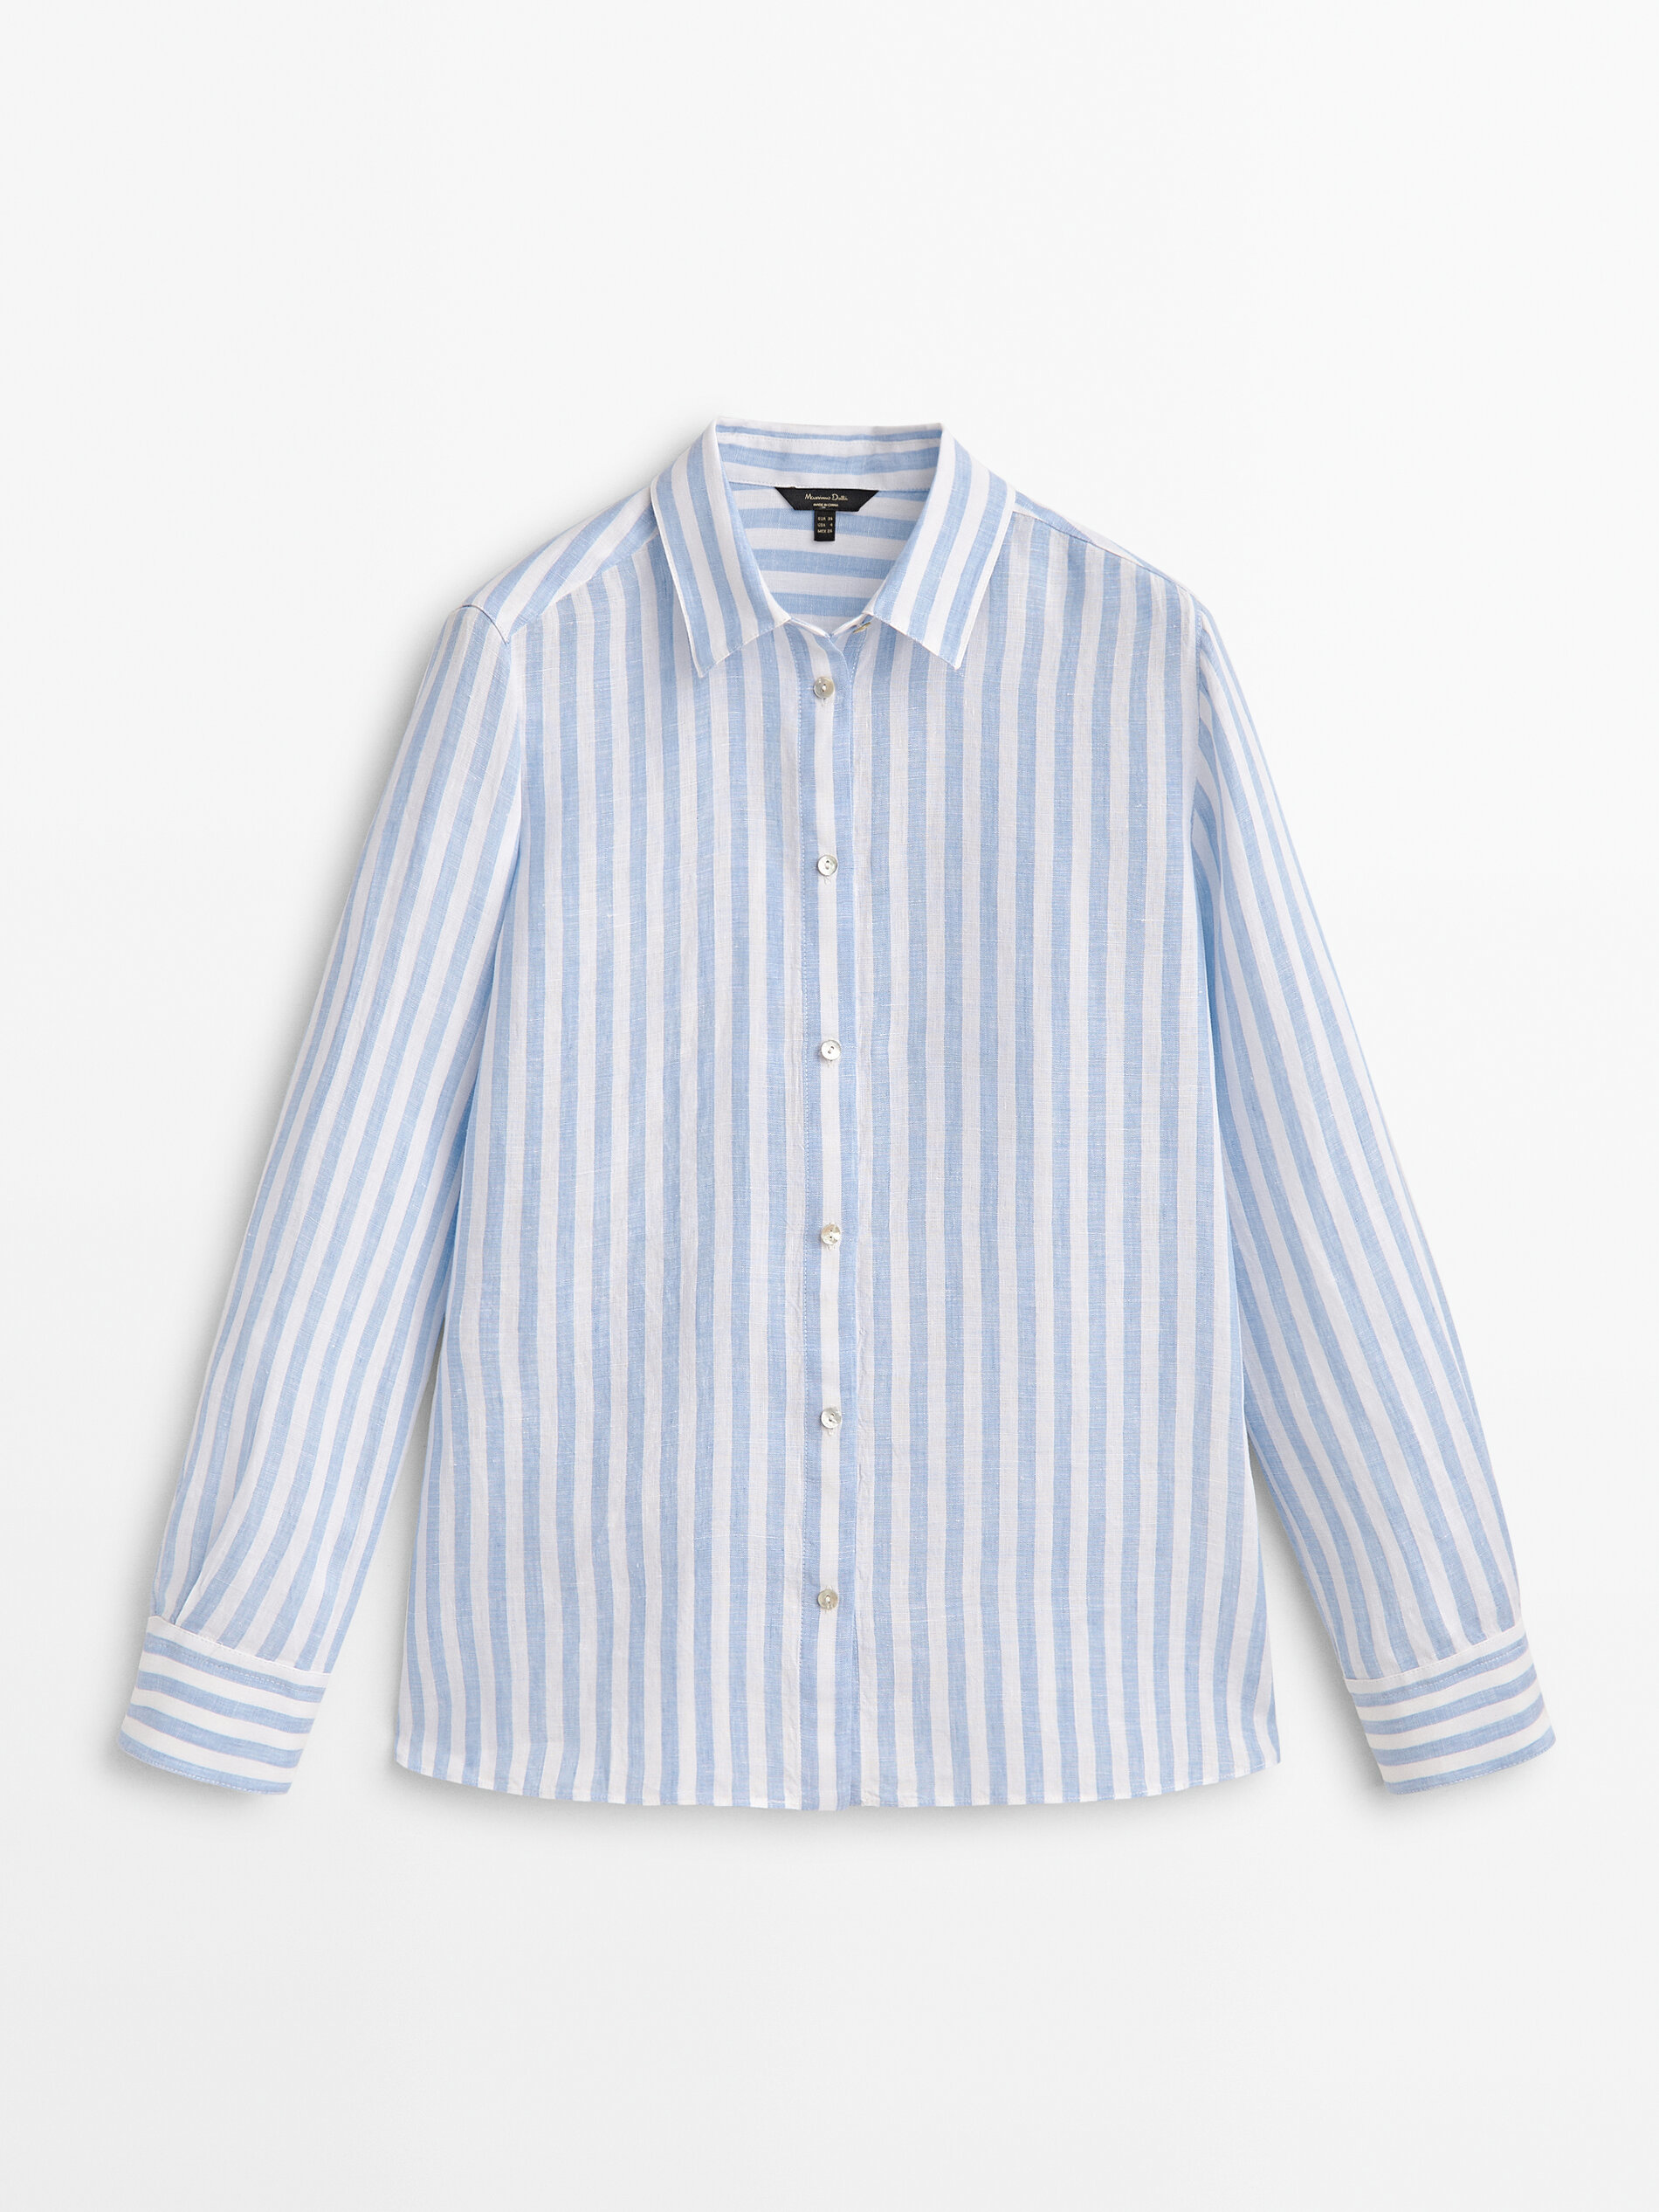 Camisa de rayas de lino de Massimo Dutti (39,95 euros).